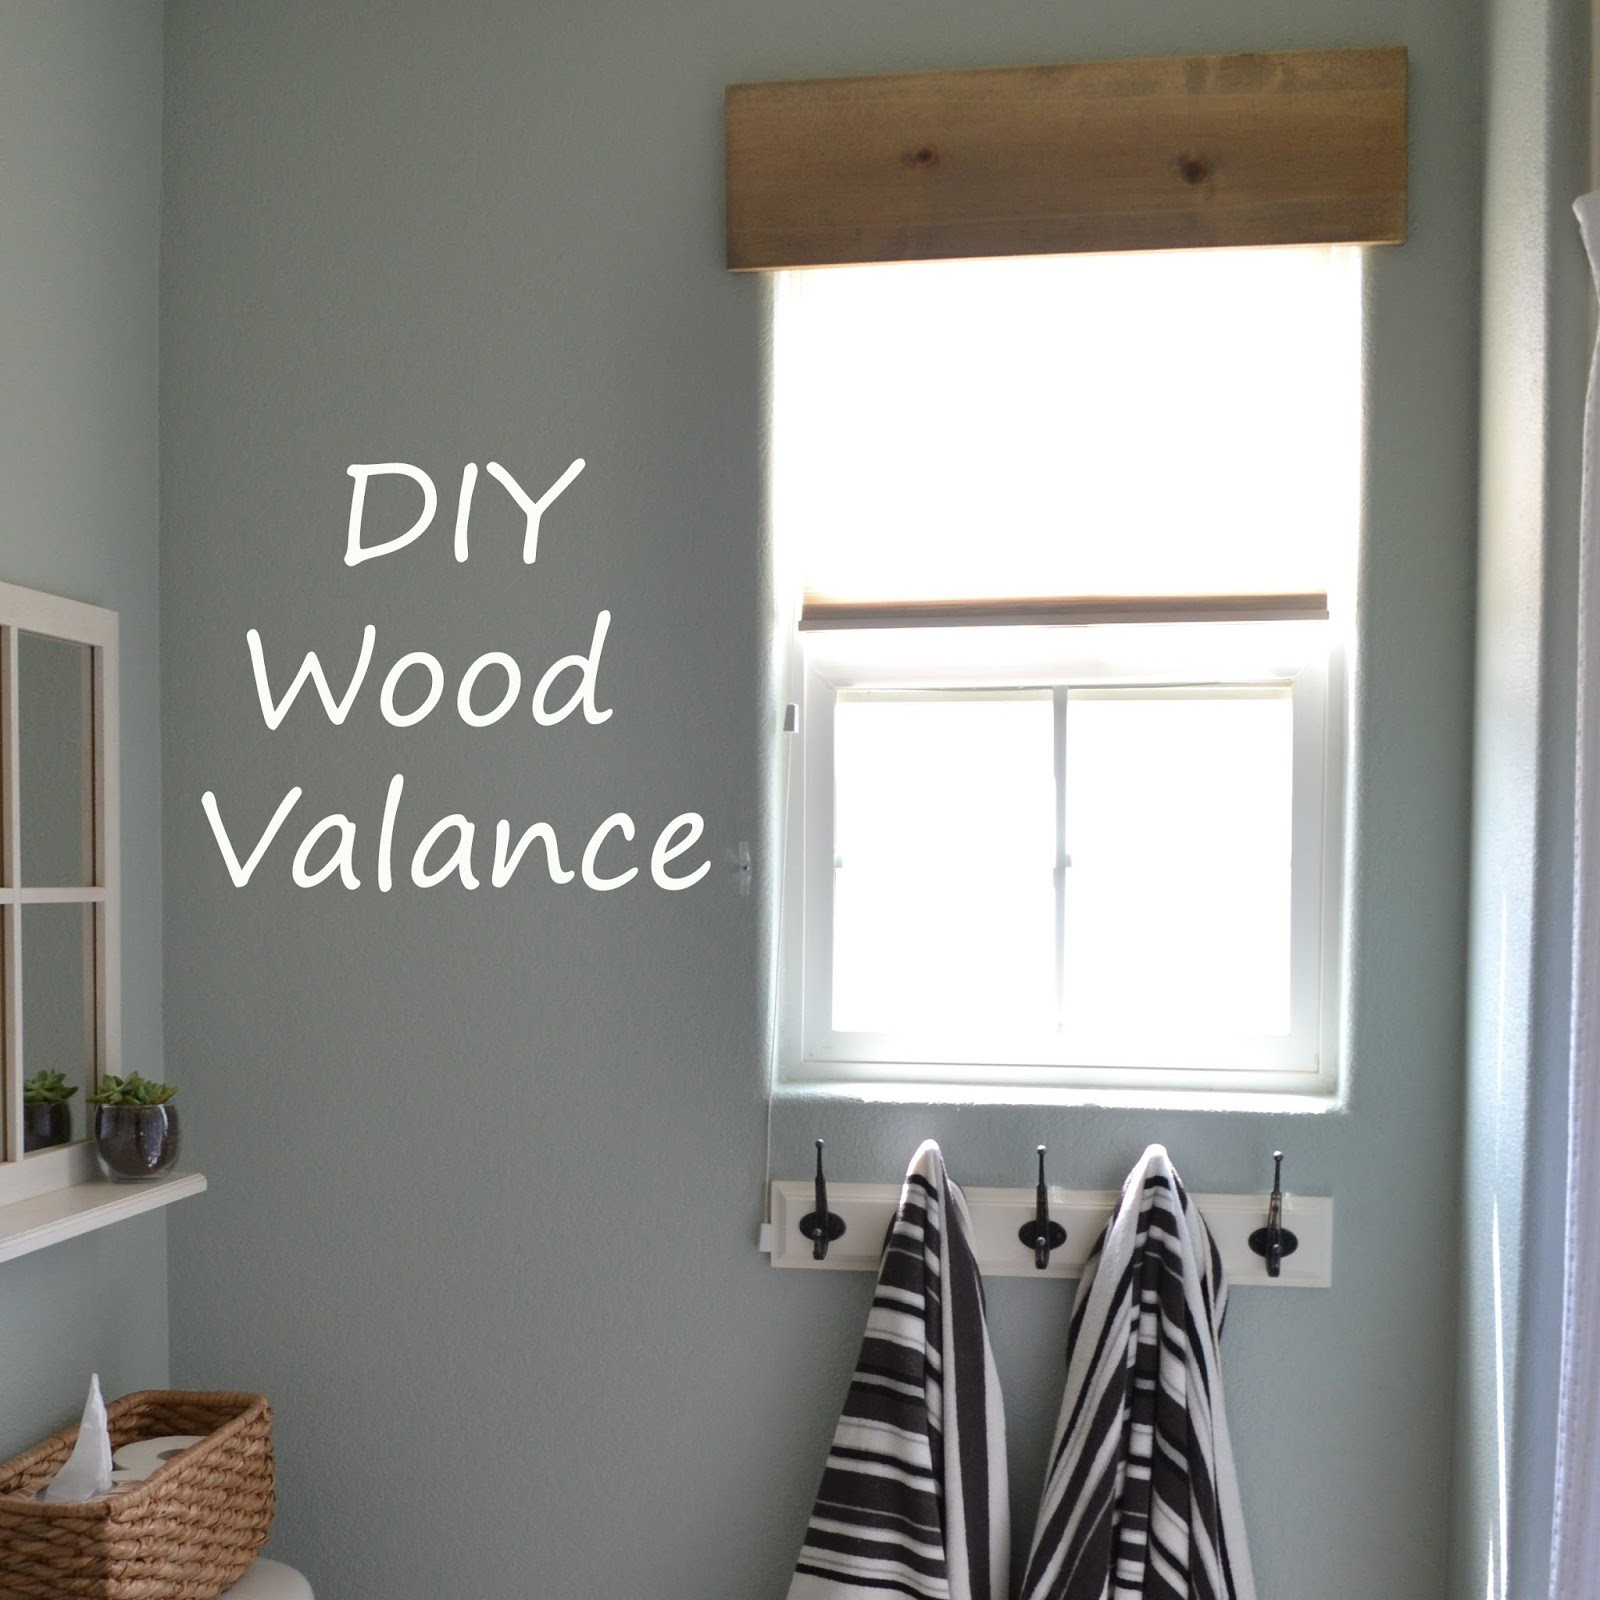 DIY Wood Window Valance
 Making Wood Valance Plans DIY Free Download platform bed